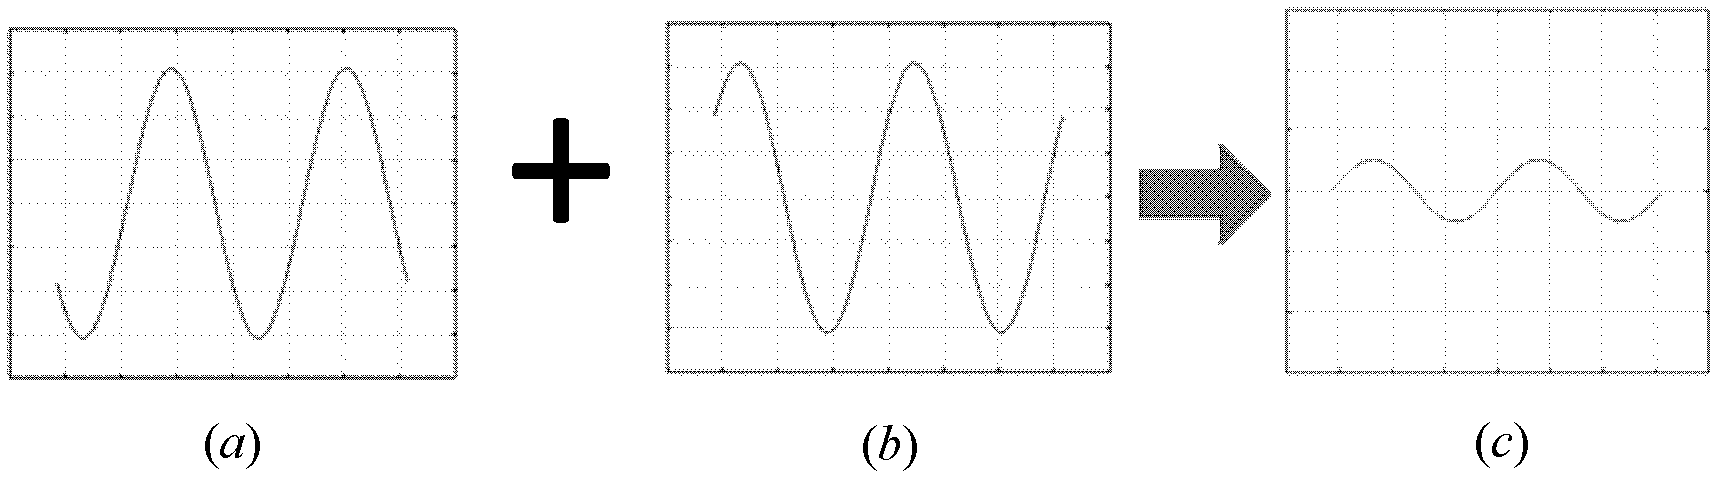 Phase extraction method for phase-shifting interferometric fringe